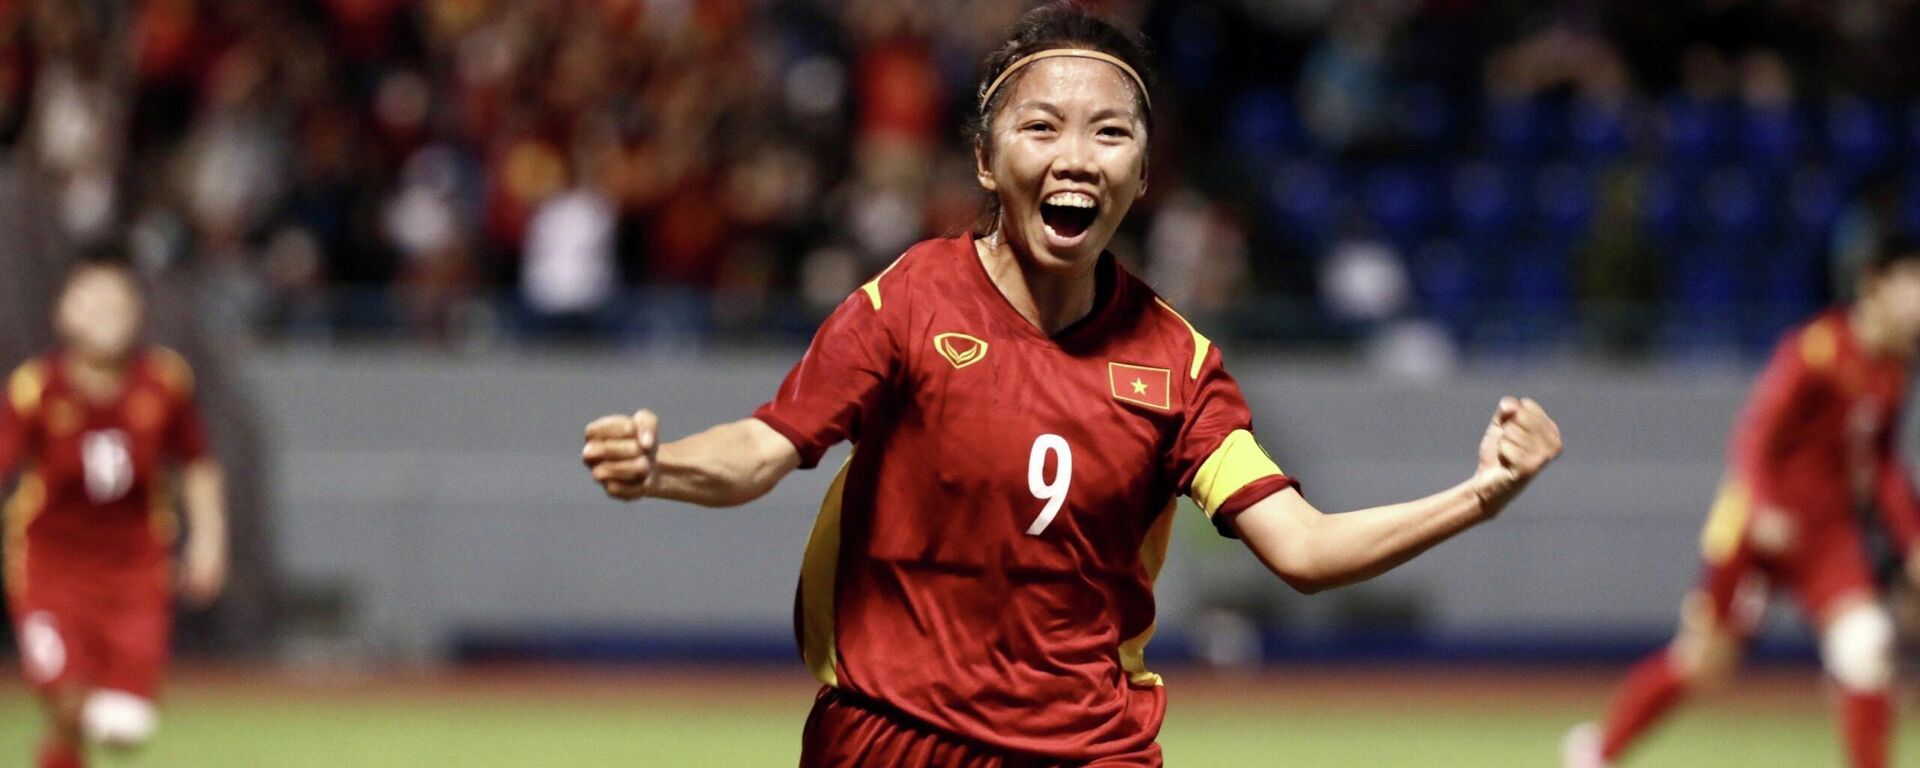 Bán kết bóng đá nữ SEA Games 31: Việt Nam gặp Myanmar: Huỳnh Như mở tỷ số - Sputnik Việt Nam, 1920, 19.05.2022